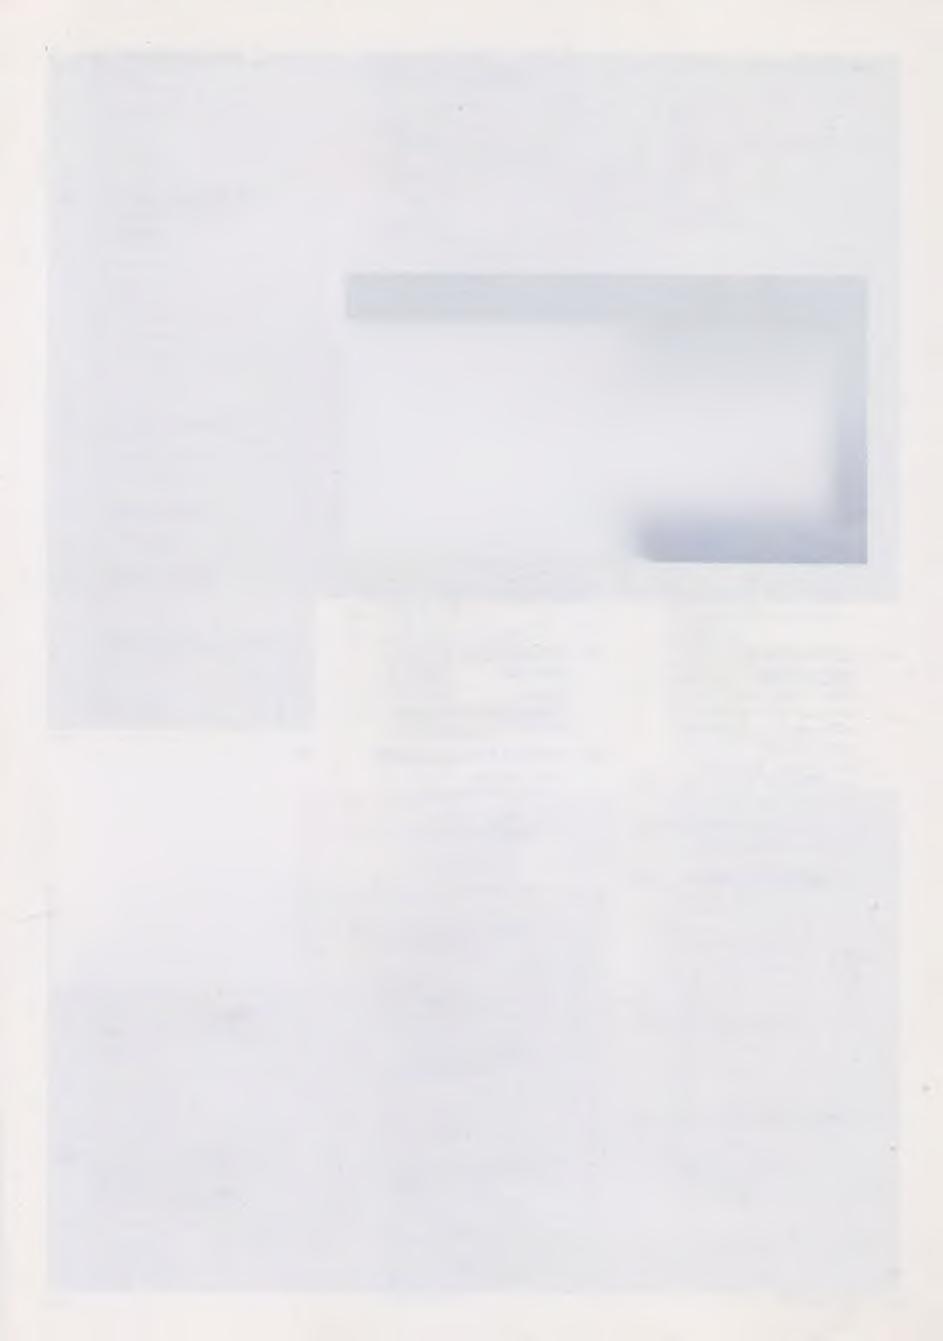 50 - İBRAHİM SAFİ (1898-1983) imzalı. Çingeneler Karton üzerine yağlıboya tablo. 33 x 38 cm.